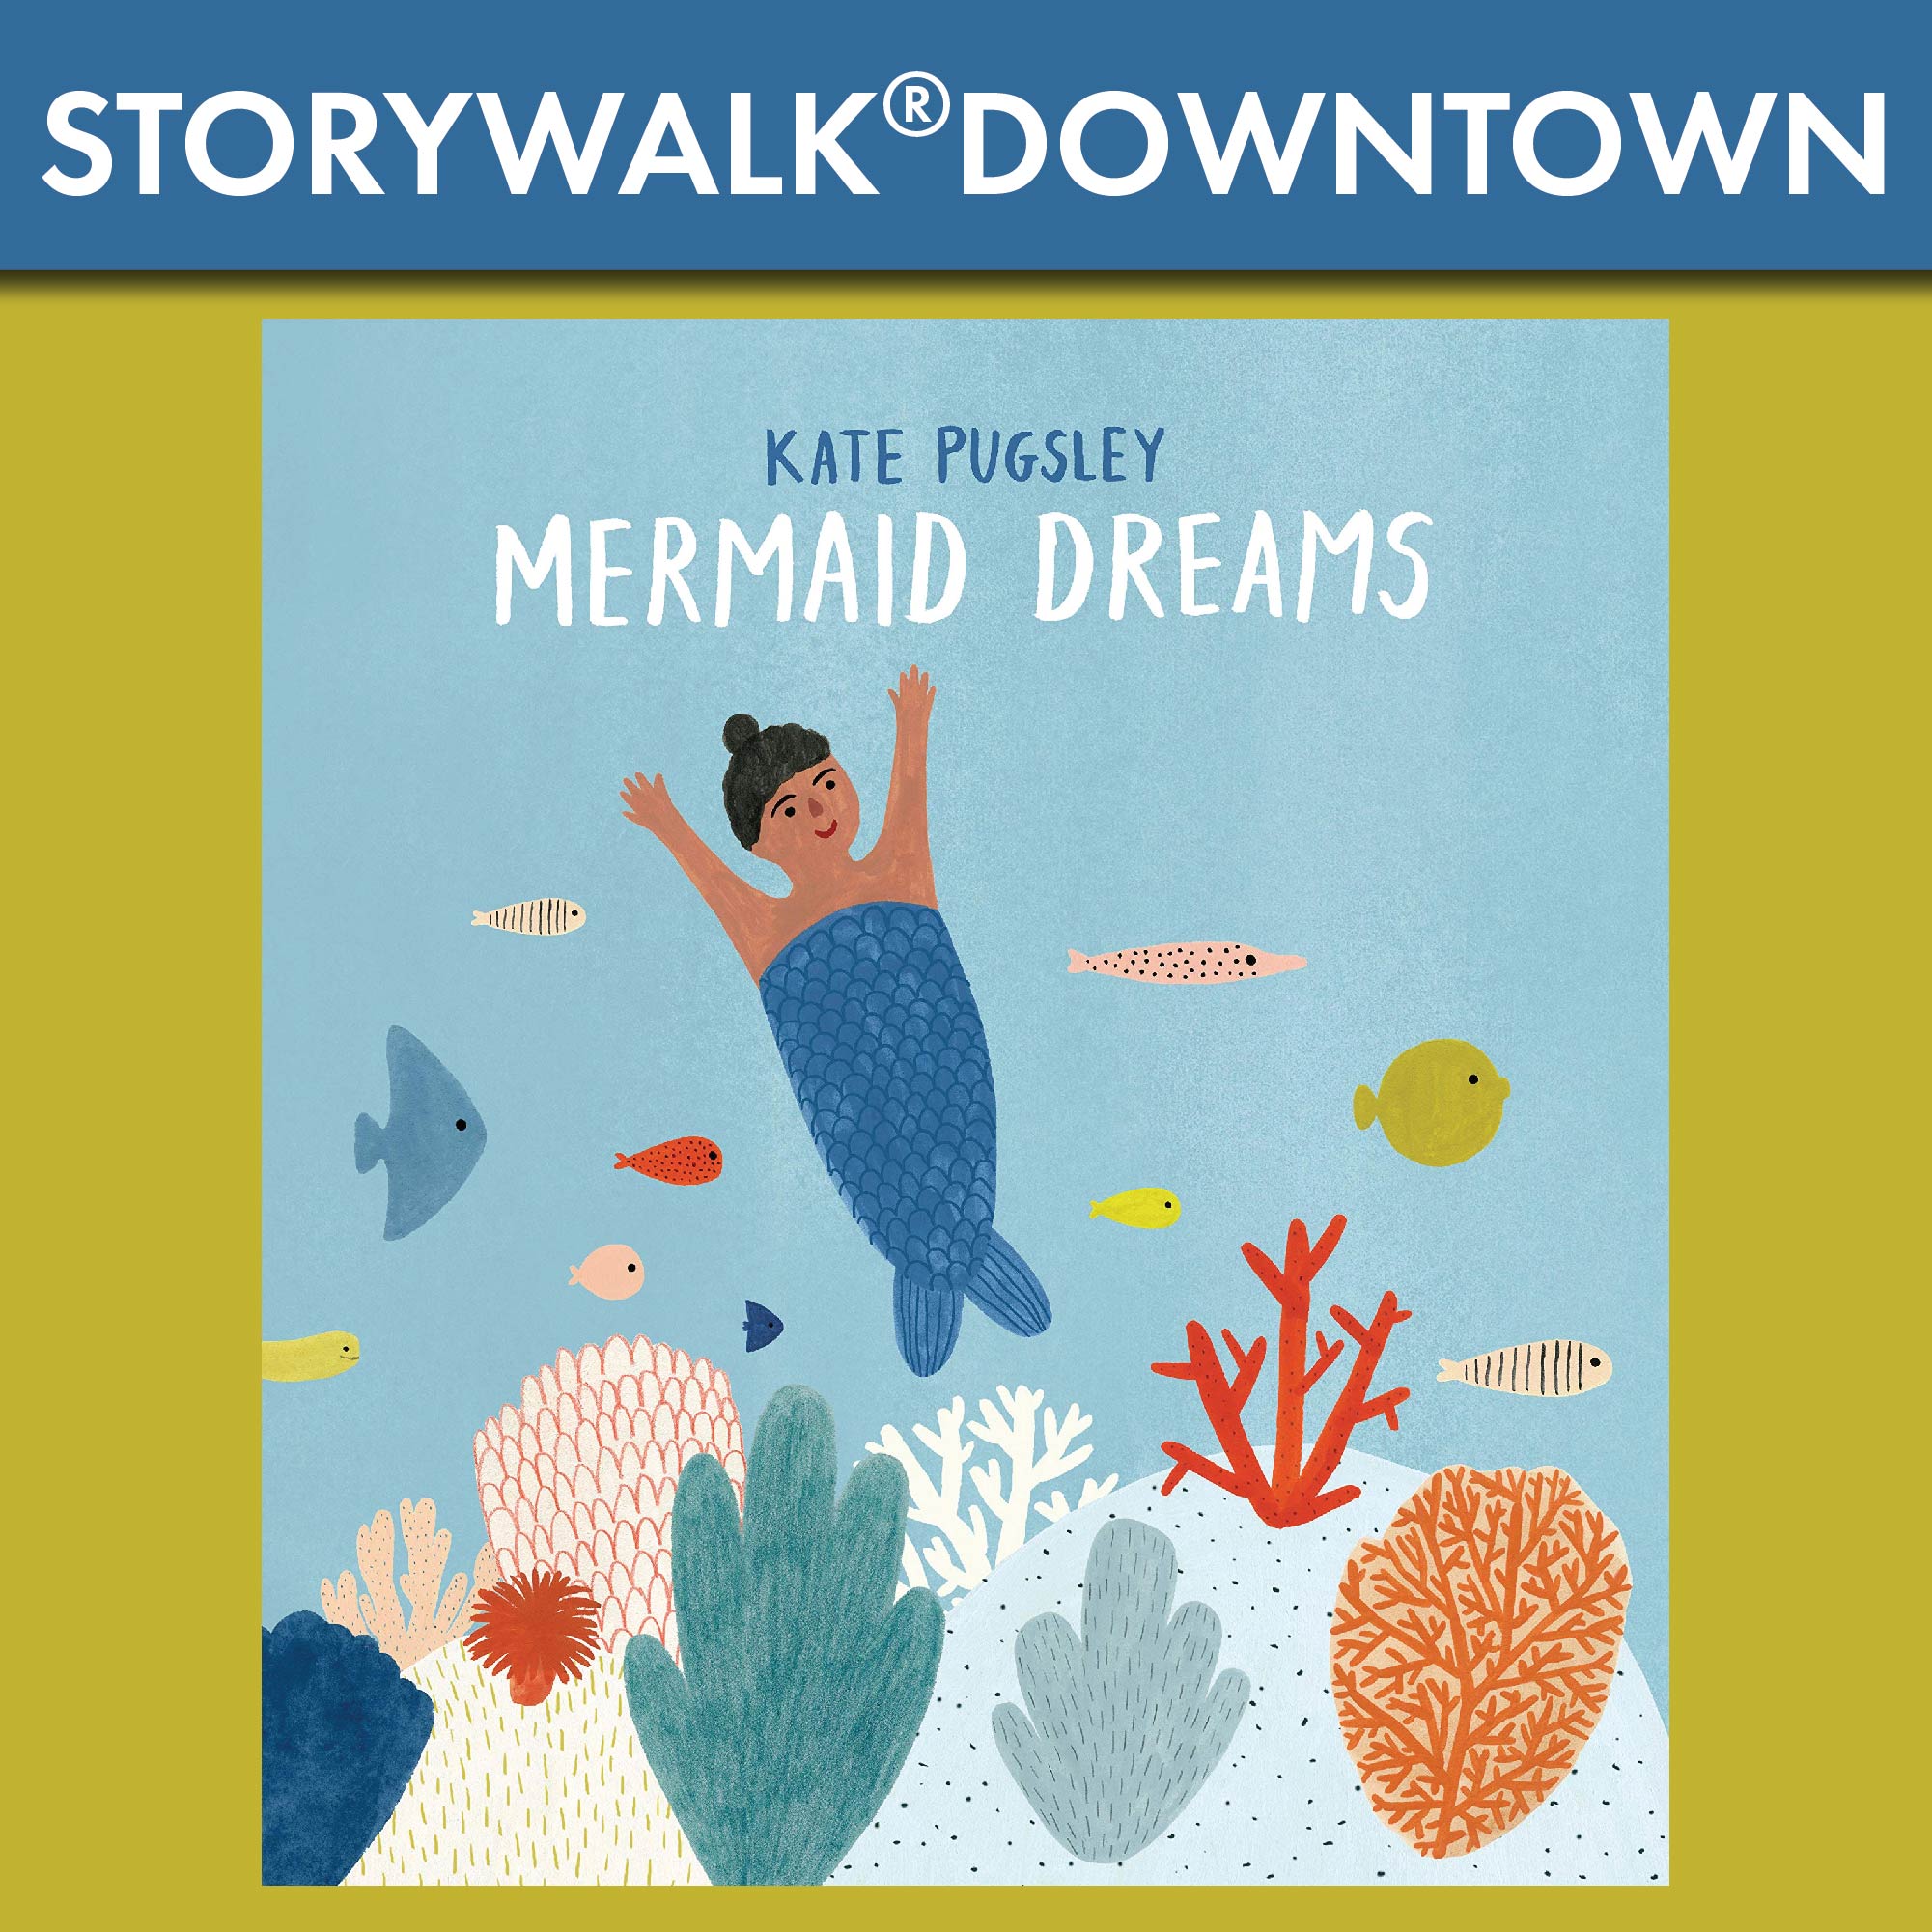 StoryWalk Downtown - Kate Pugsley, Mermaid Dreams